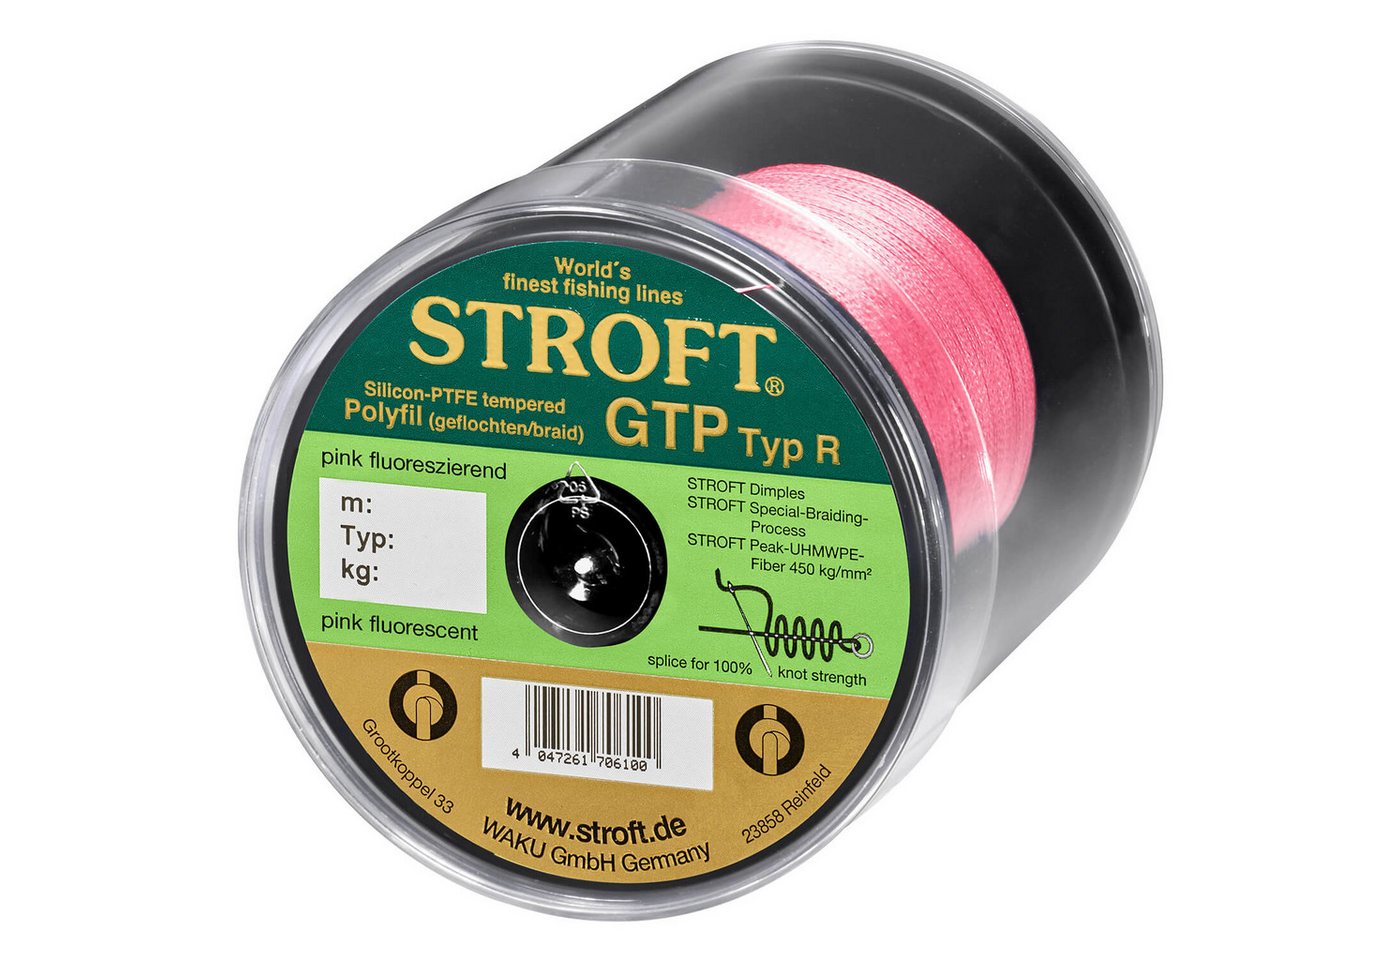 Stroft Angelschnur STROFT GTP Typ R Geflochtene Angelschnur 600m pink fluor, 600 m Länge, 0.22 mm Fadendurchmesser, (1-St), 9kg Tragkraft von Stroft